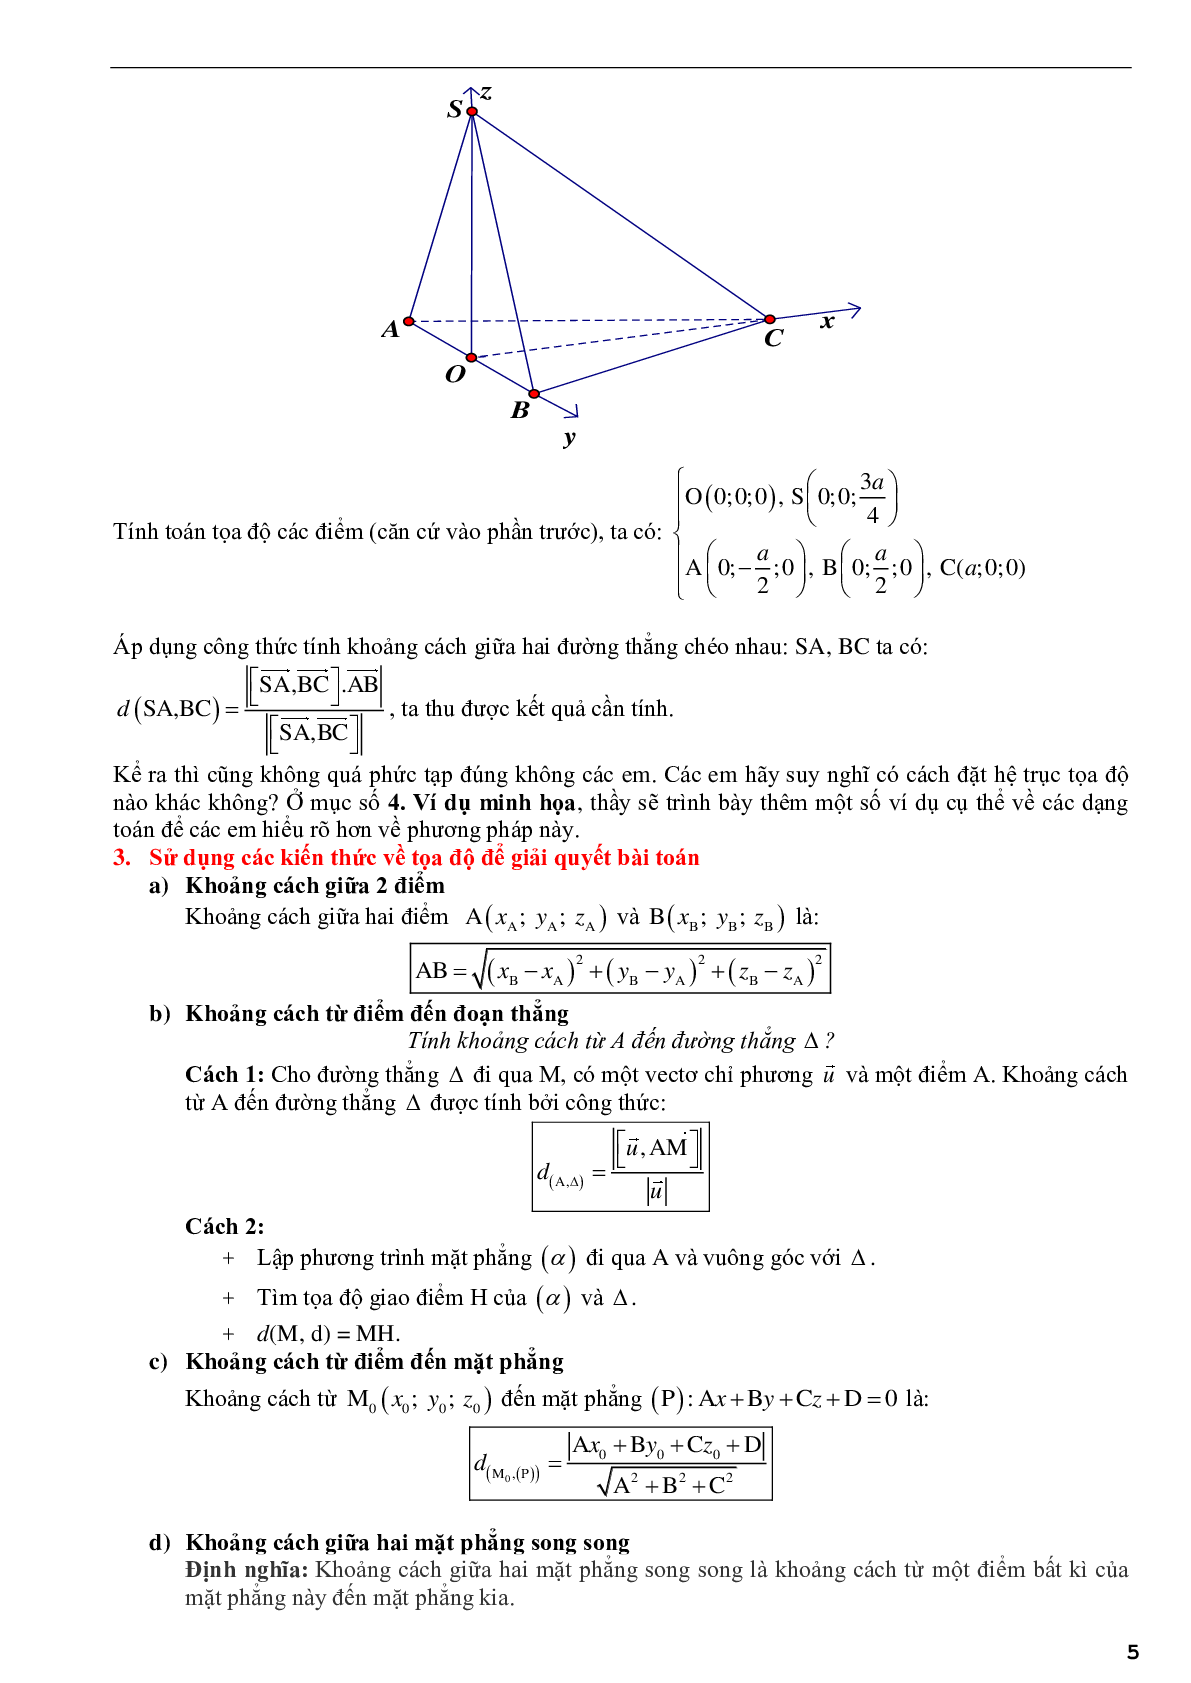 Ứng dụng phương pháp tọa độ để giải bài toán hình học không gian - phần 2 (trang 5)